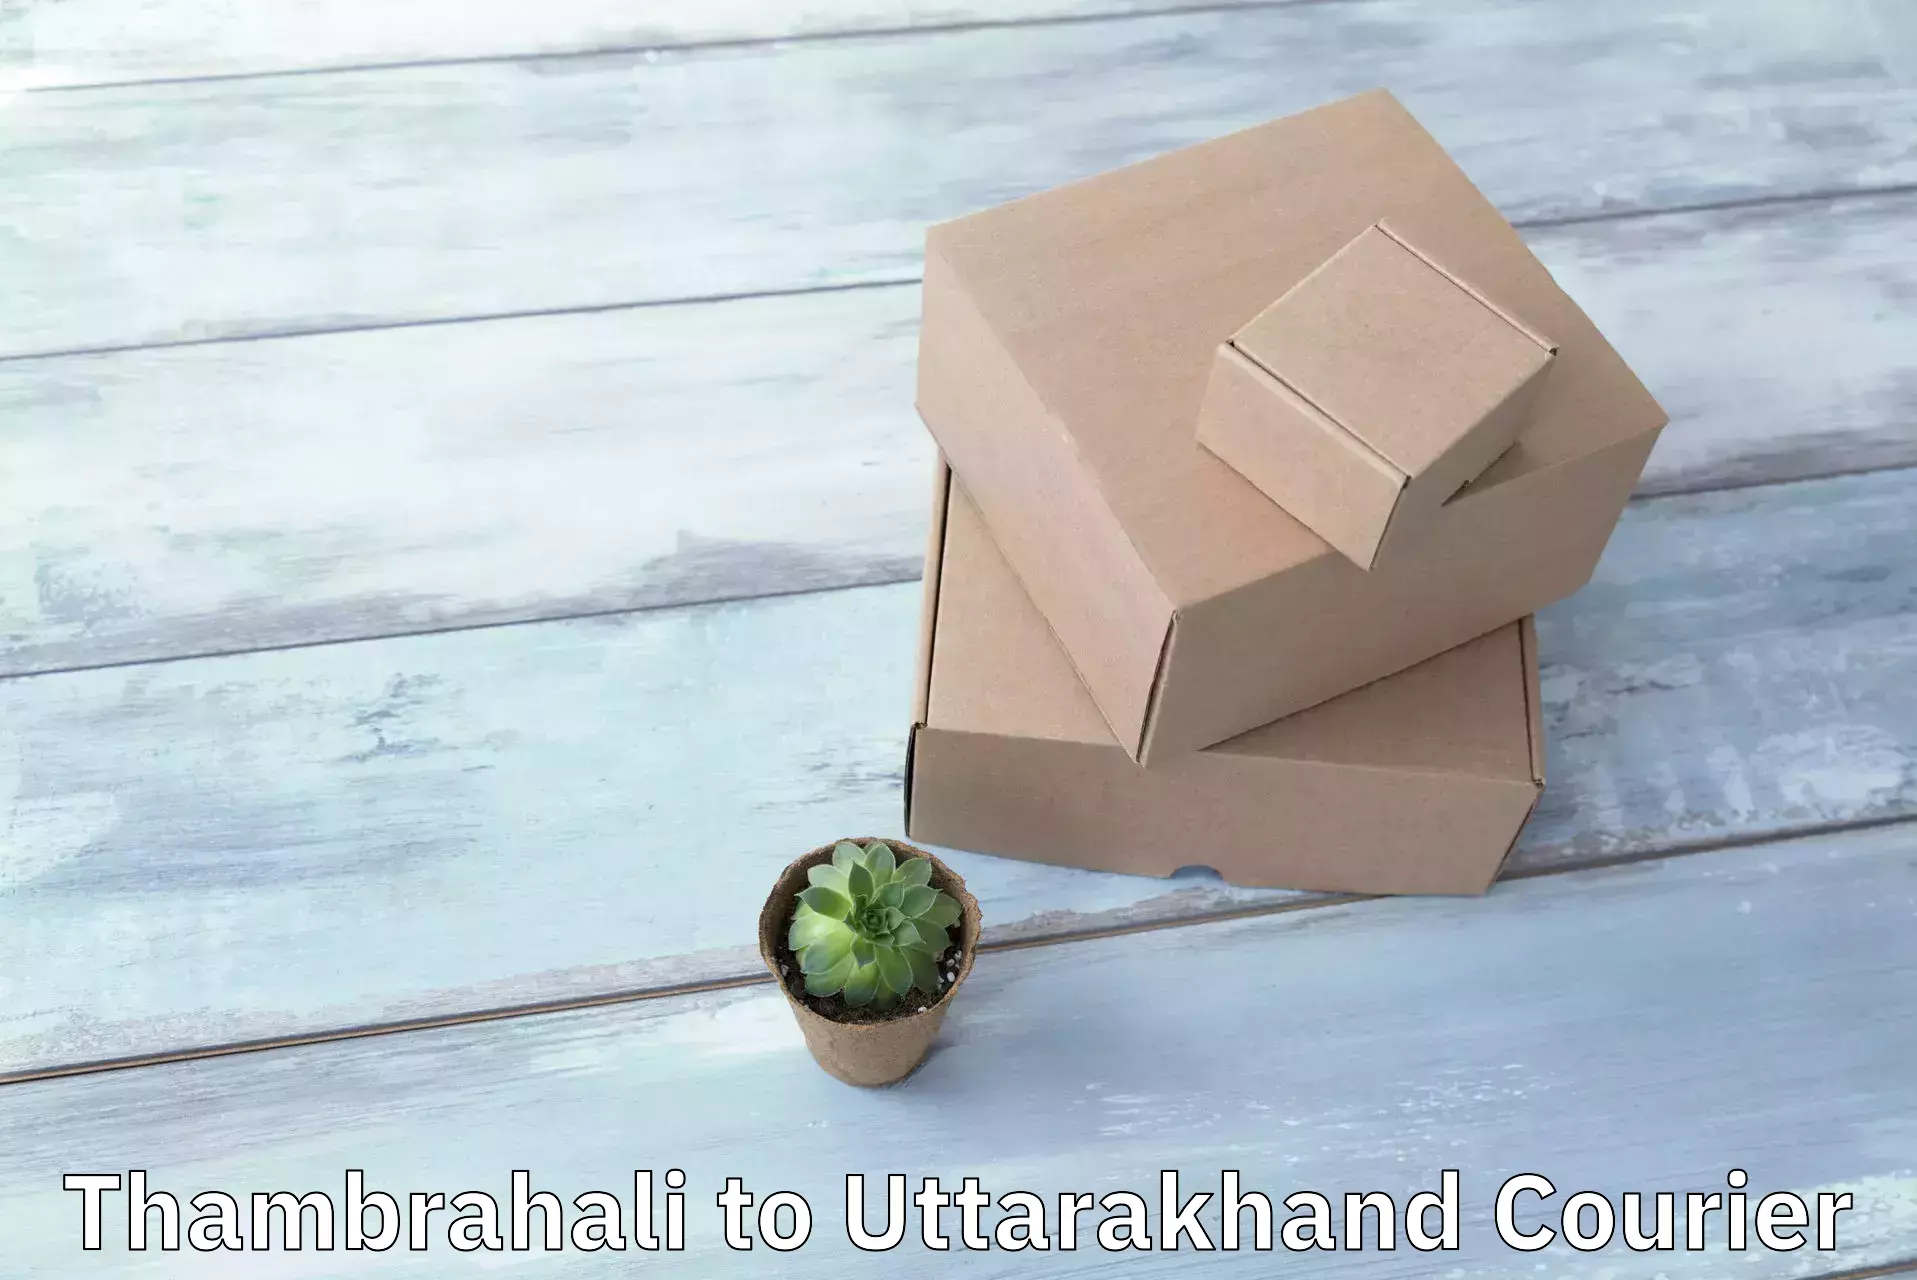 Custom courier packaging Thambrahali to Uttarakhand